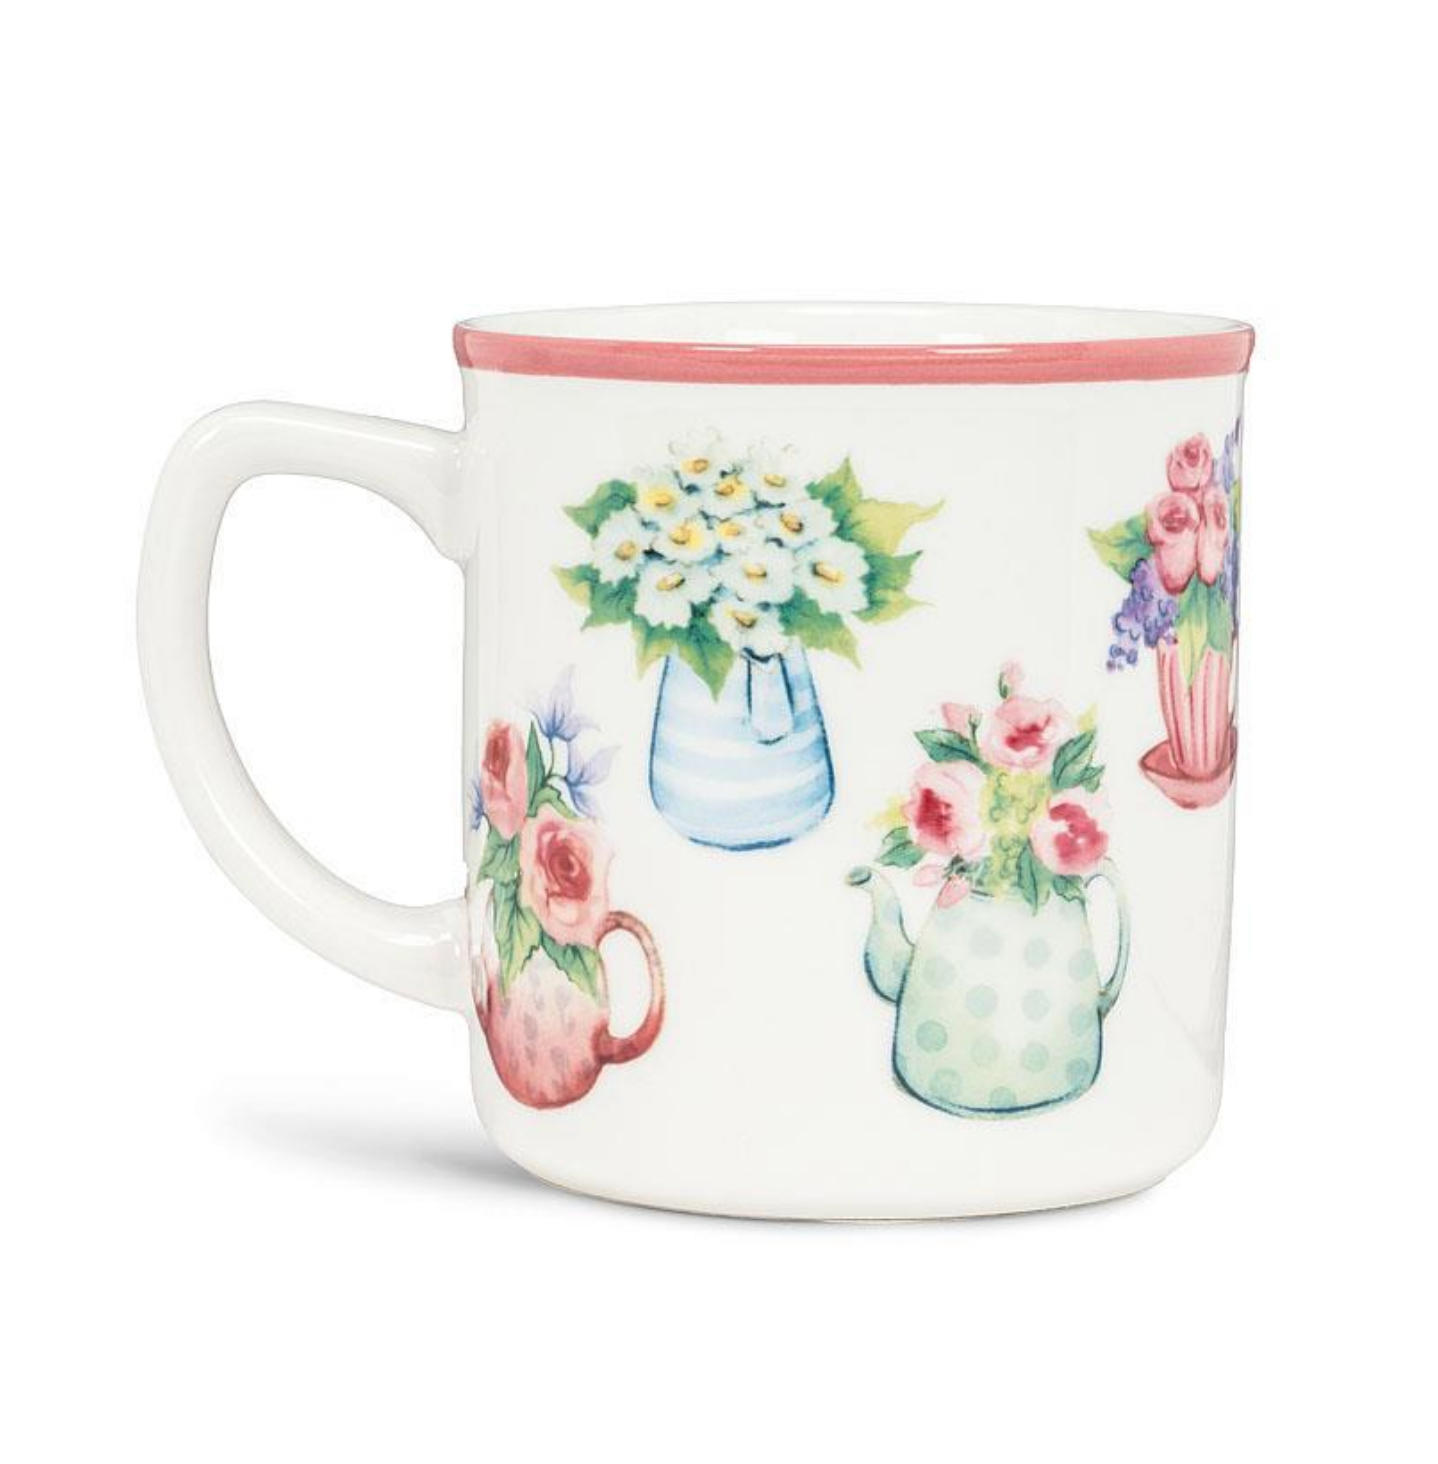 Flowers in Cup Mug